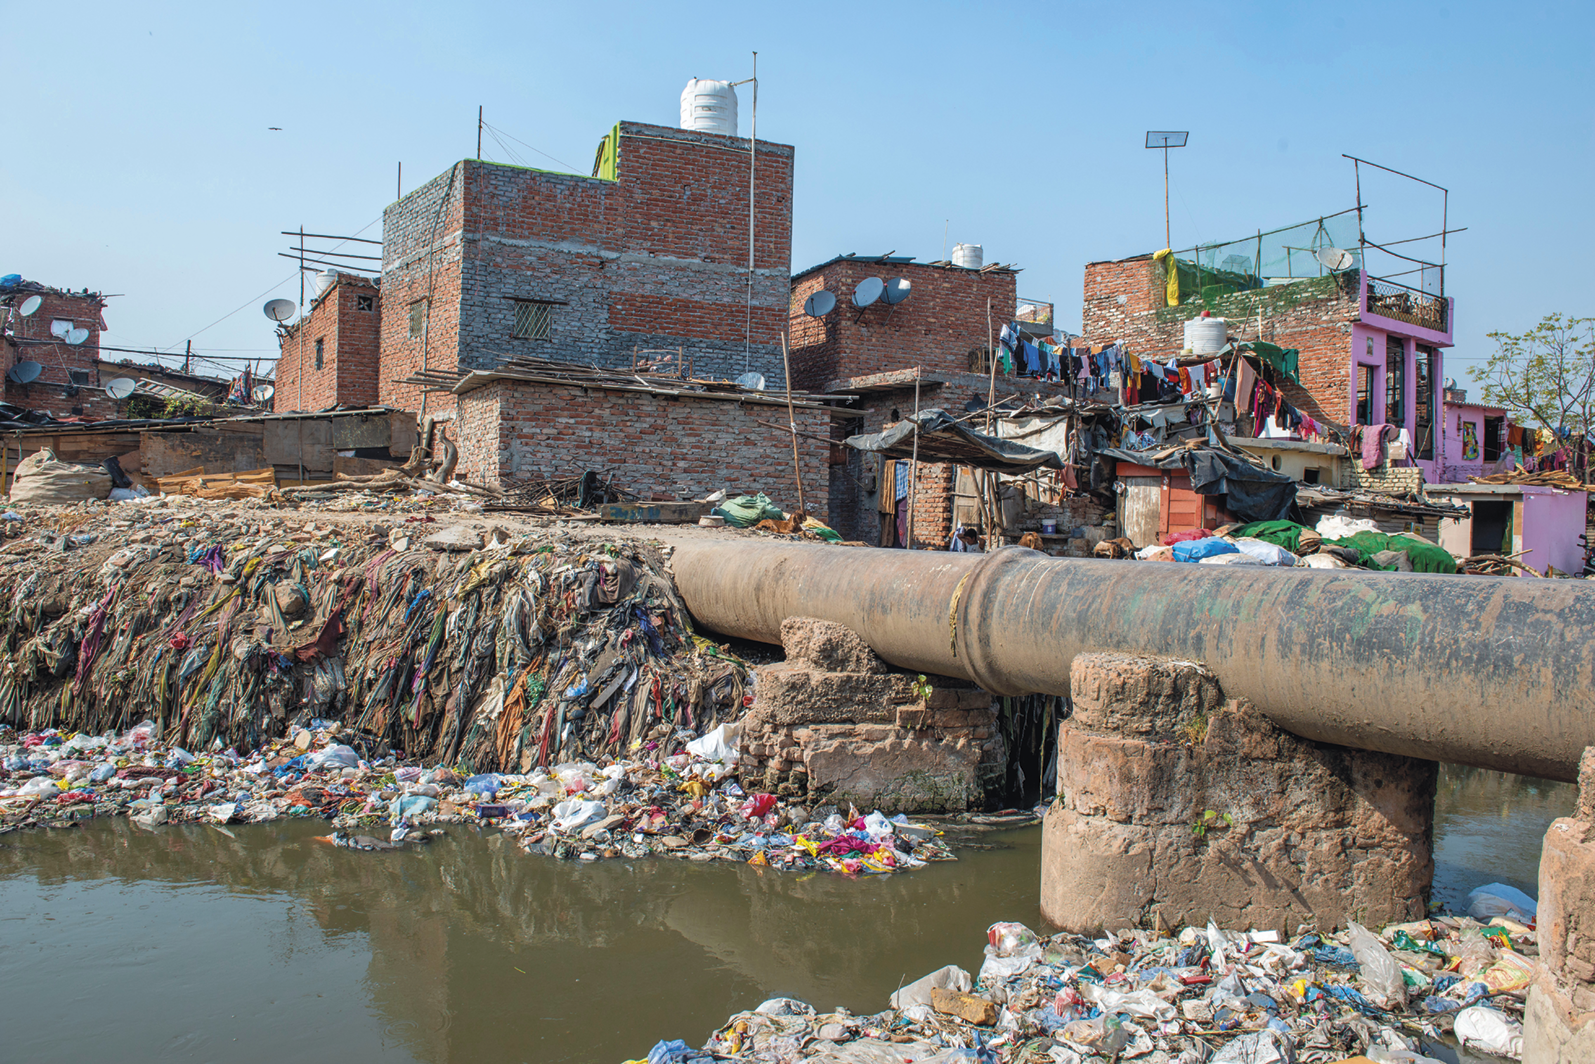 Fotografia. Rio repleto de lixo boiando e preso na margem. Há um duto que passa sobre o rio. Ao fundo, casas com tijolos expostos agrupadas.